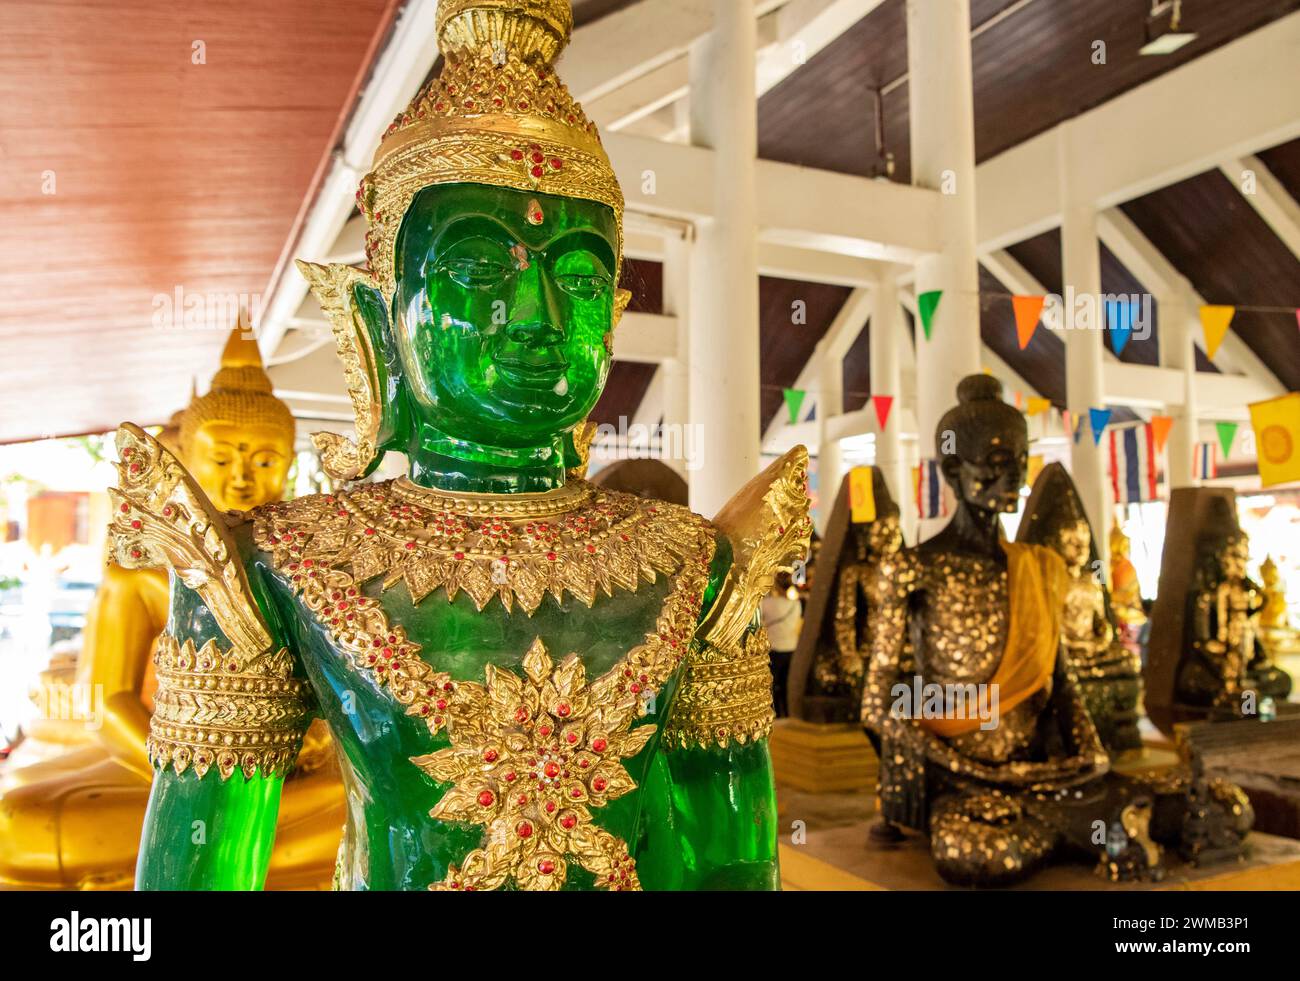 Bouddha à l'intérieur du temple Wat Pho Bang Khla près de la ville Mueang Chachoengsao ville dans la province de Chachoengsao en Thaïlande. Thaïlande, Chachoengsao, Novemb Banque D'Images